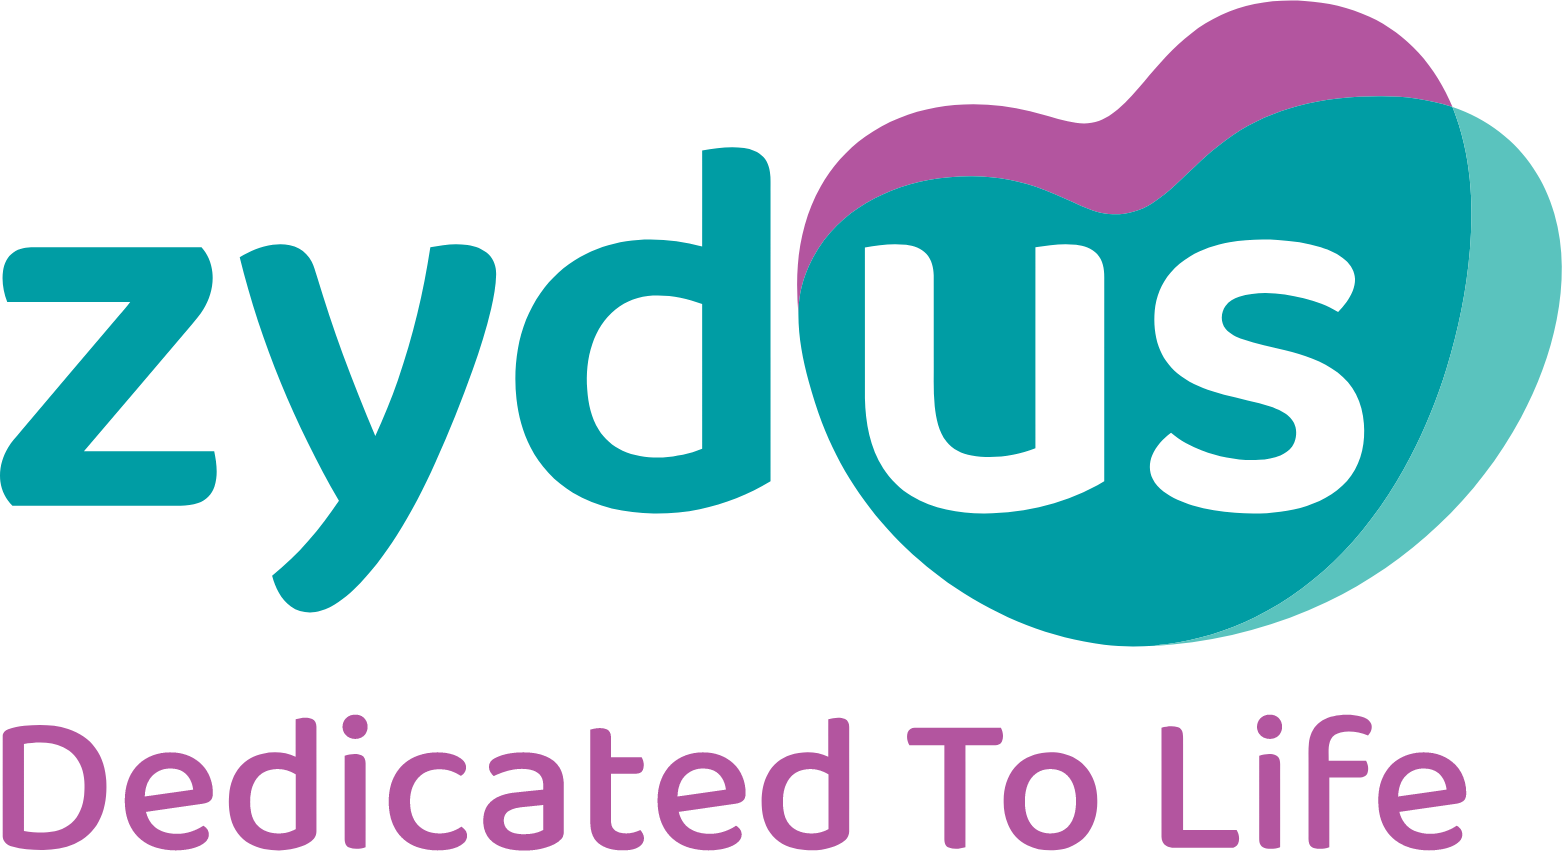 Zydus Lifesciences logo large (transparent PNG)